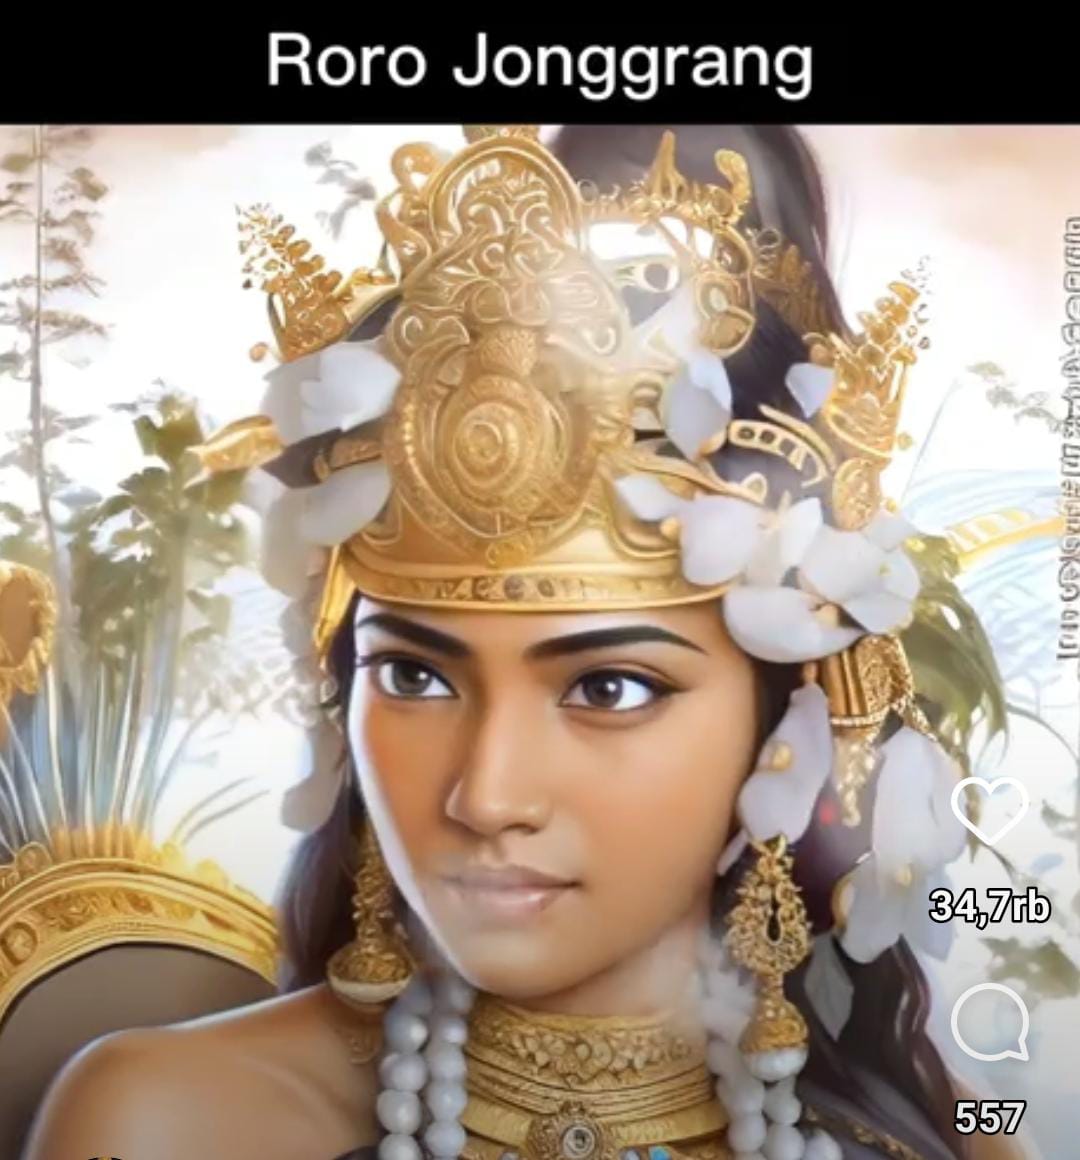 Mengintip Kecantikan Roro Jonggrang Penakluk Hati Bandung Bondowoso versi AI, Eksotis Banget! 